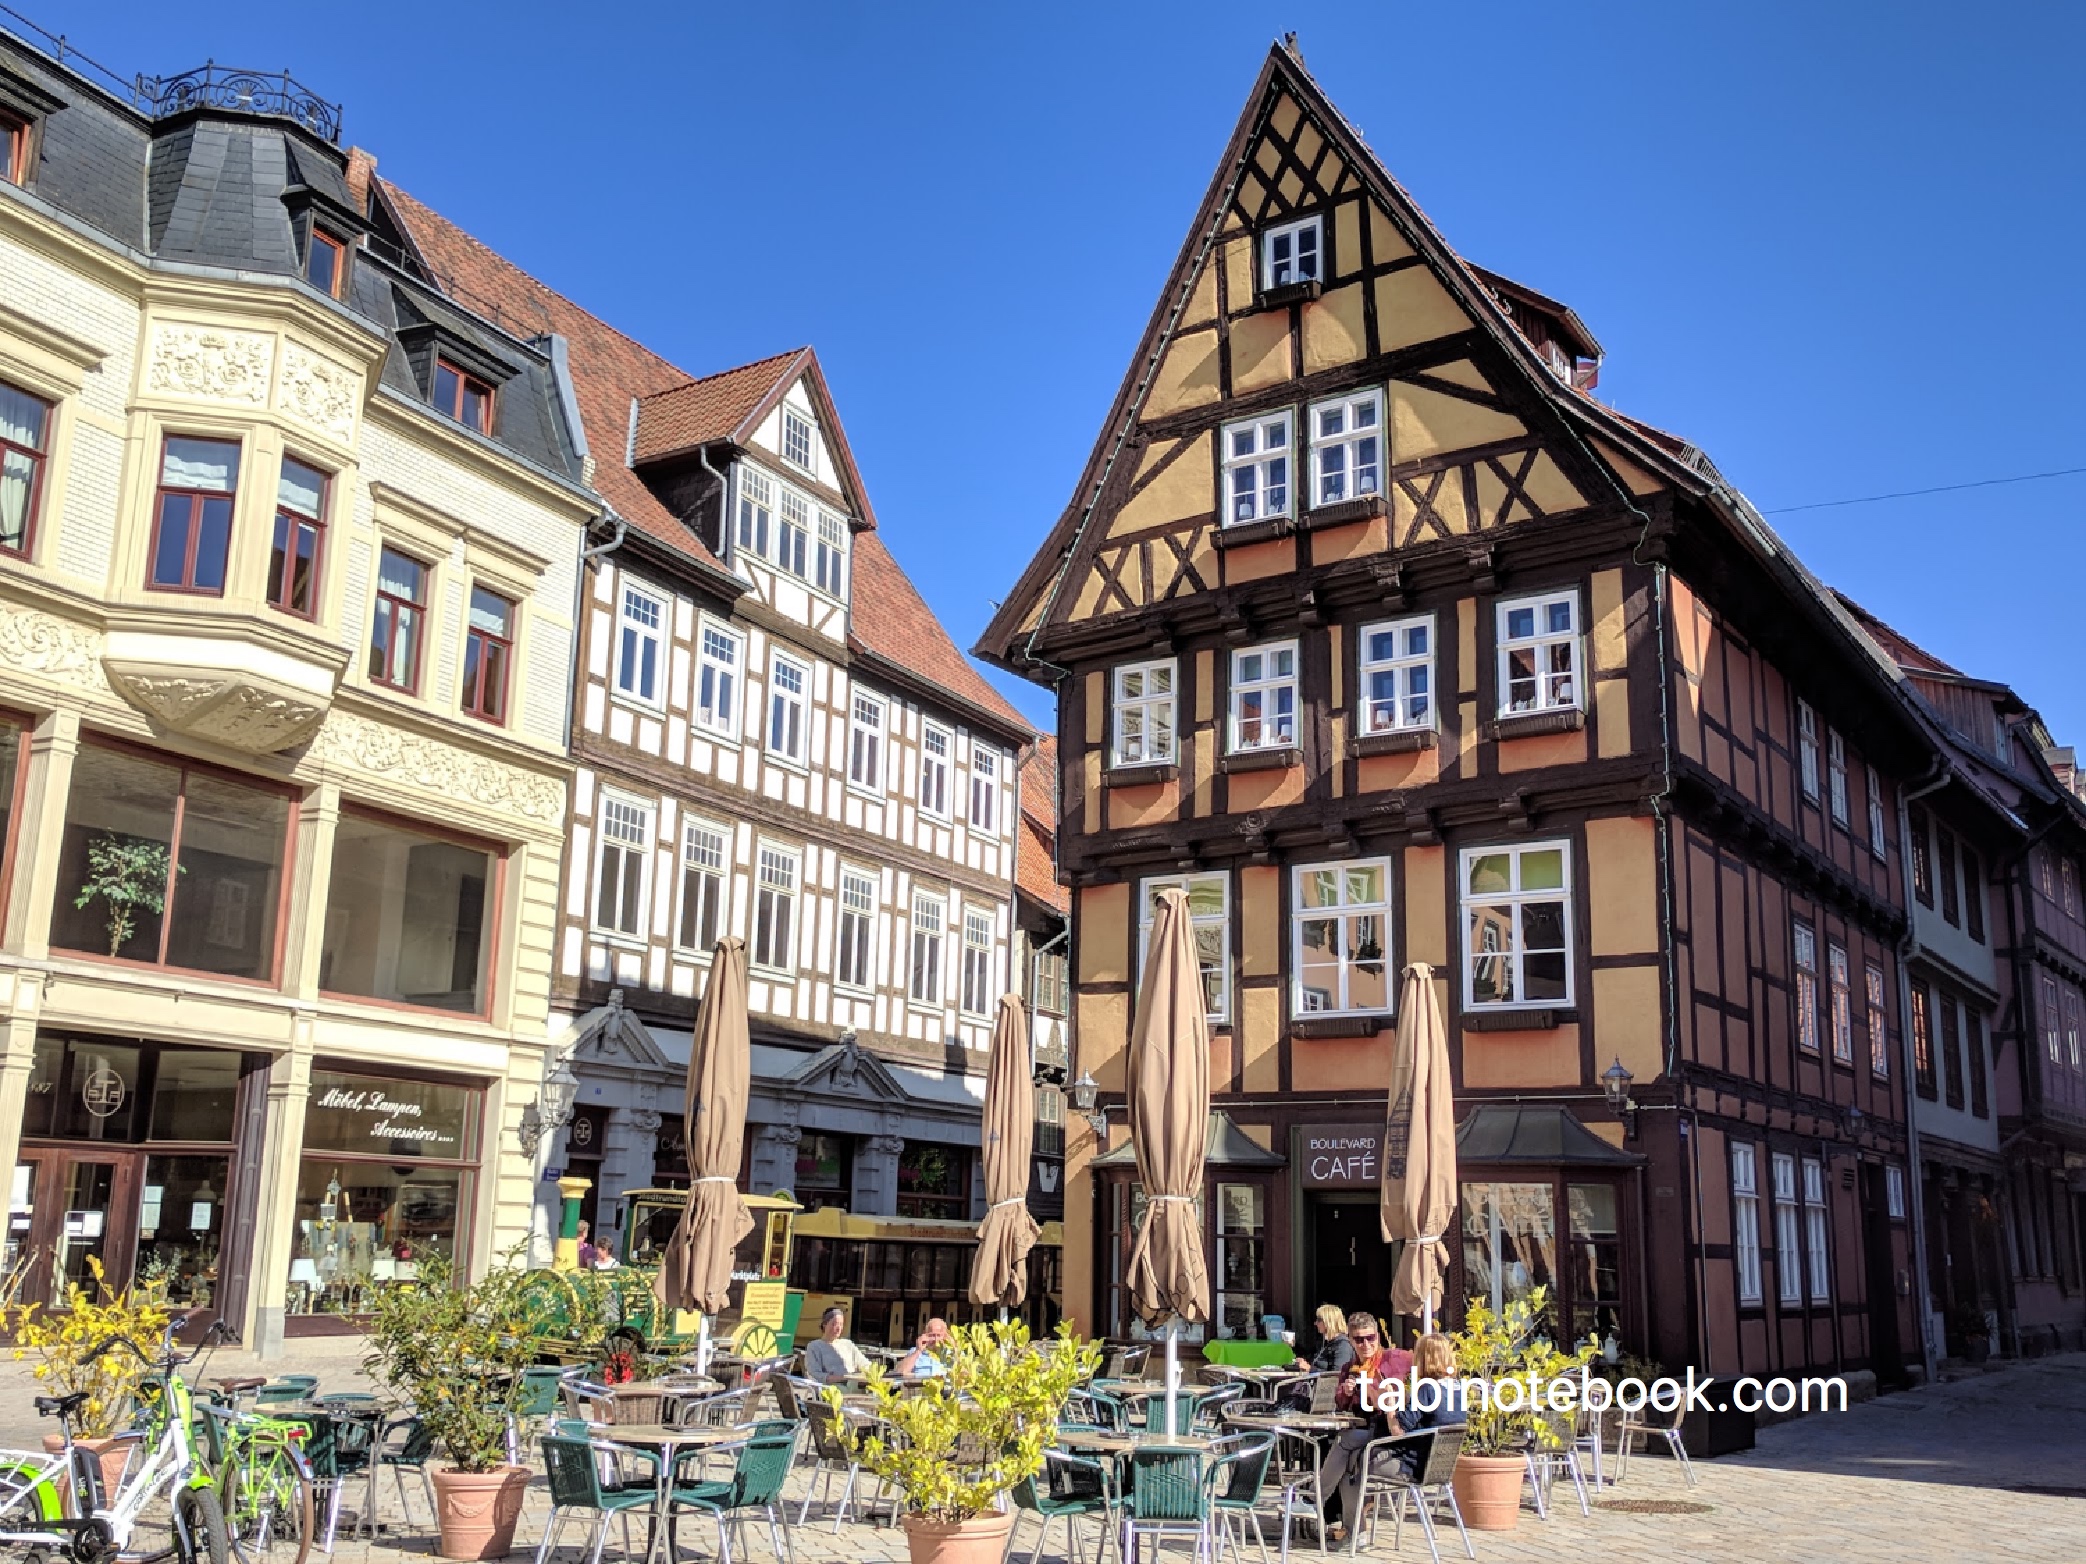 ドイツ最古の街 木骨組みの家が立ち並ぶクヴェトリンブルグ観光